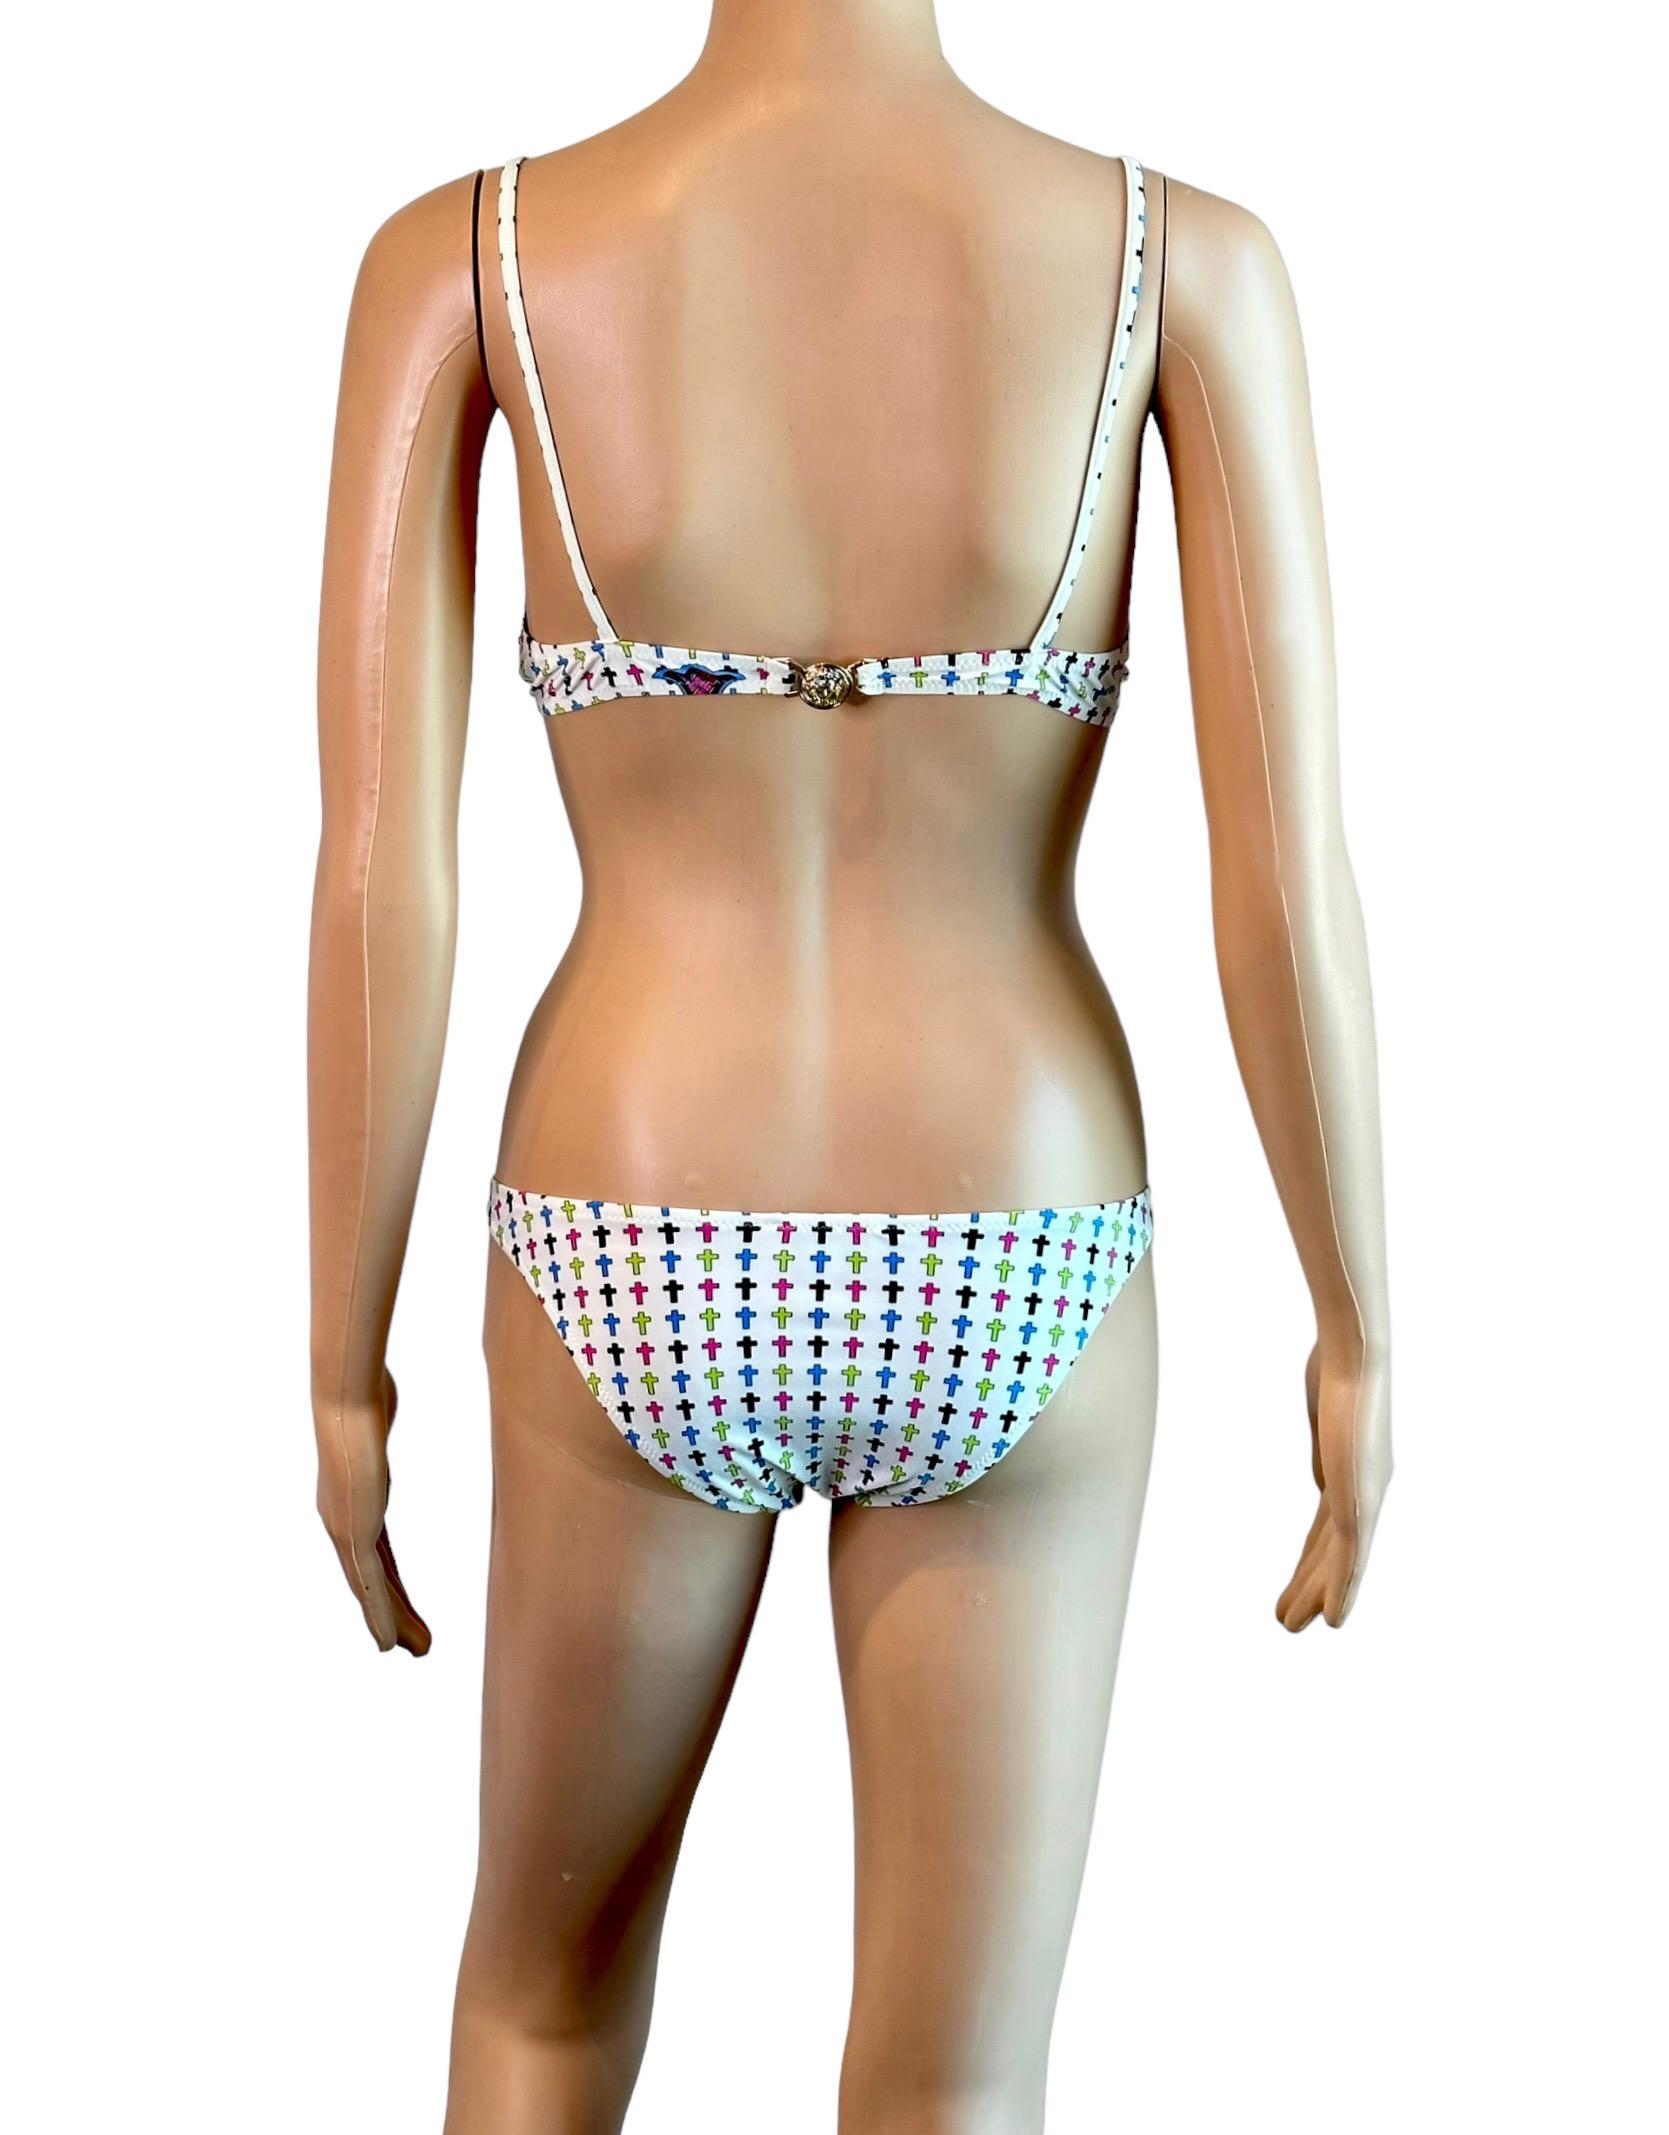 Versace S/S 2005 Medusa Logo verschönert Zweiteiliger Bikini Set Badeanzug Bademode IT 42

FOLGEN SIE UNS AUF INSTAGRAM @OPULENTADDICT